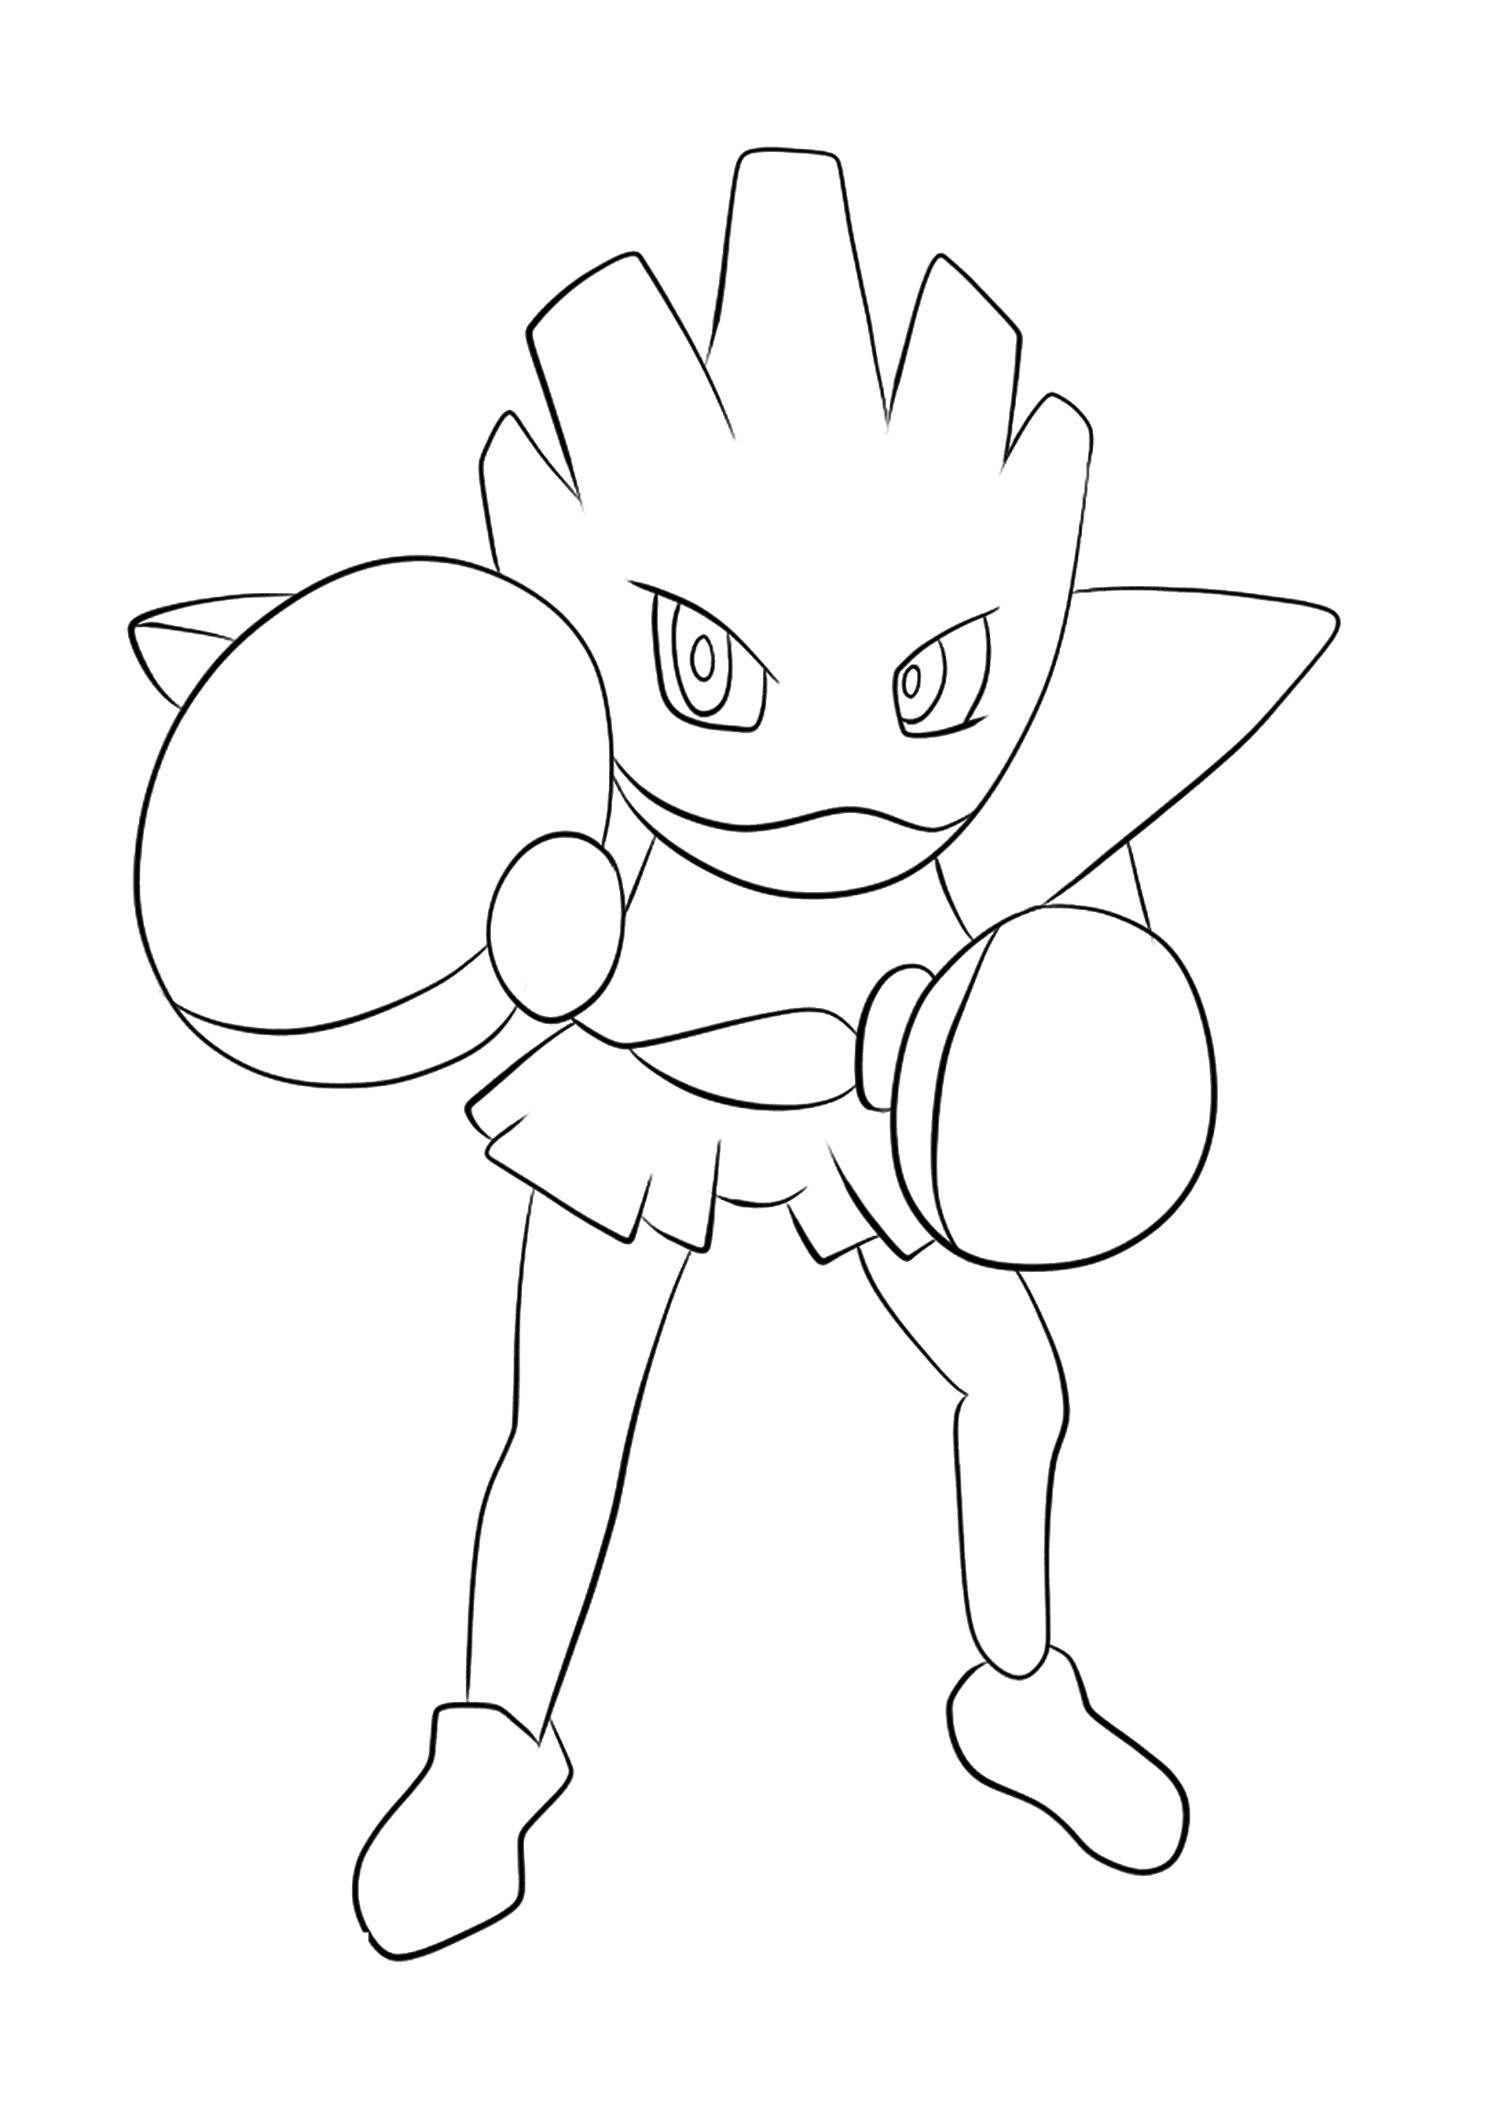 Tygnon (No.107). Coloriage de Tygnon (Hitmonchan), Pokémon de Génération I, de type : Combat